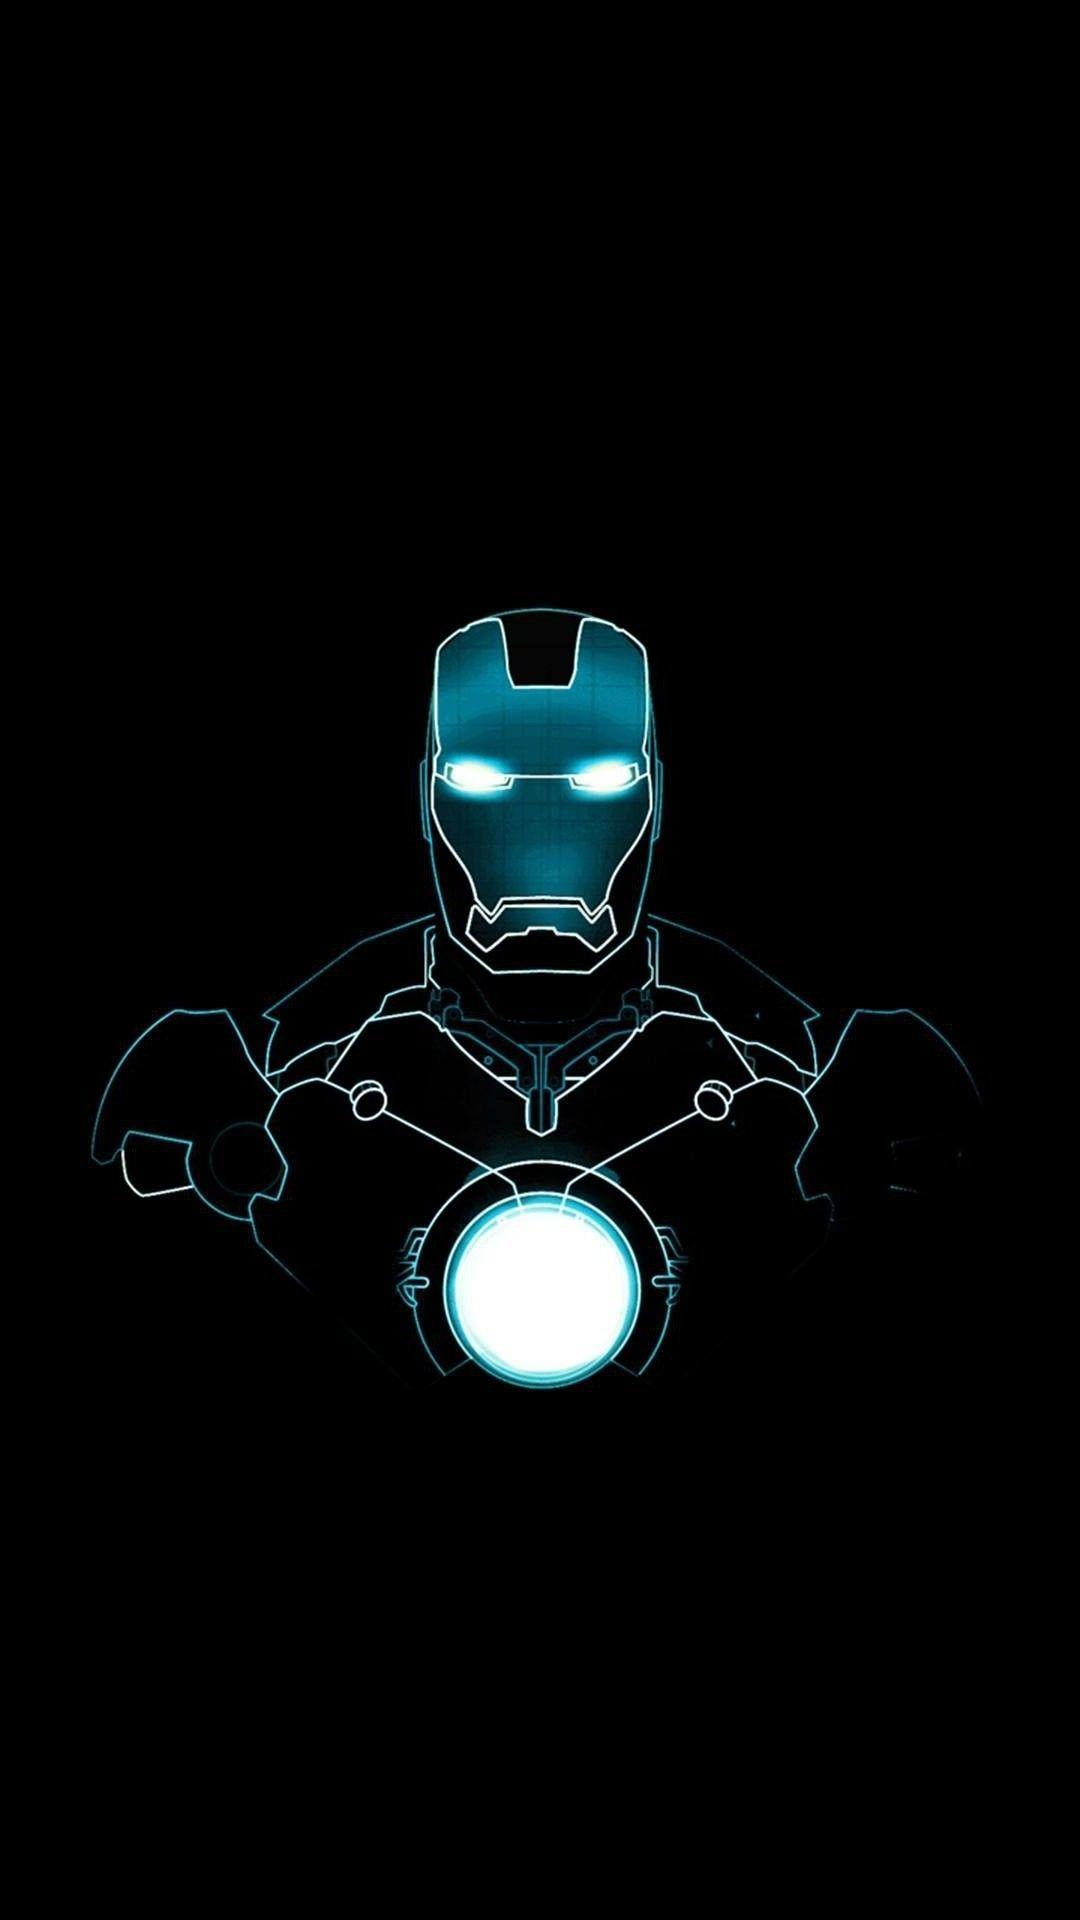 Sắm ngay hình nền Iron Man 4K cho iPhone của bạn để tạo ra một diện mạo hoàn toàn mới lạ. Với chất lượng hình ảnh tuyệt vời, những hình nền sẽ giúp bạn đưa ra thông điệp của mình với một cách thật sự ấn tượng. Hãy để mình bị mê hoặc bởi những khung hình đầy sáng tạo và những câu chuyện đầy kích thích của Iron Man cùng hình nền Iron Man 4K cho iPhone.